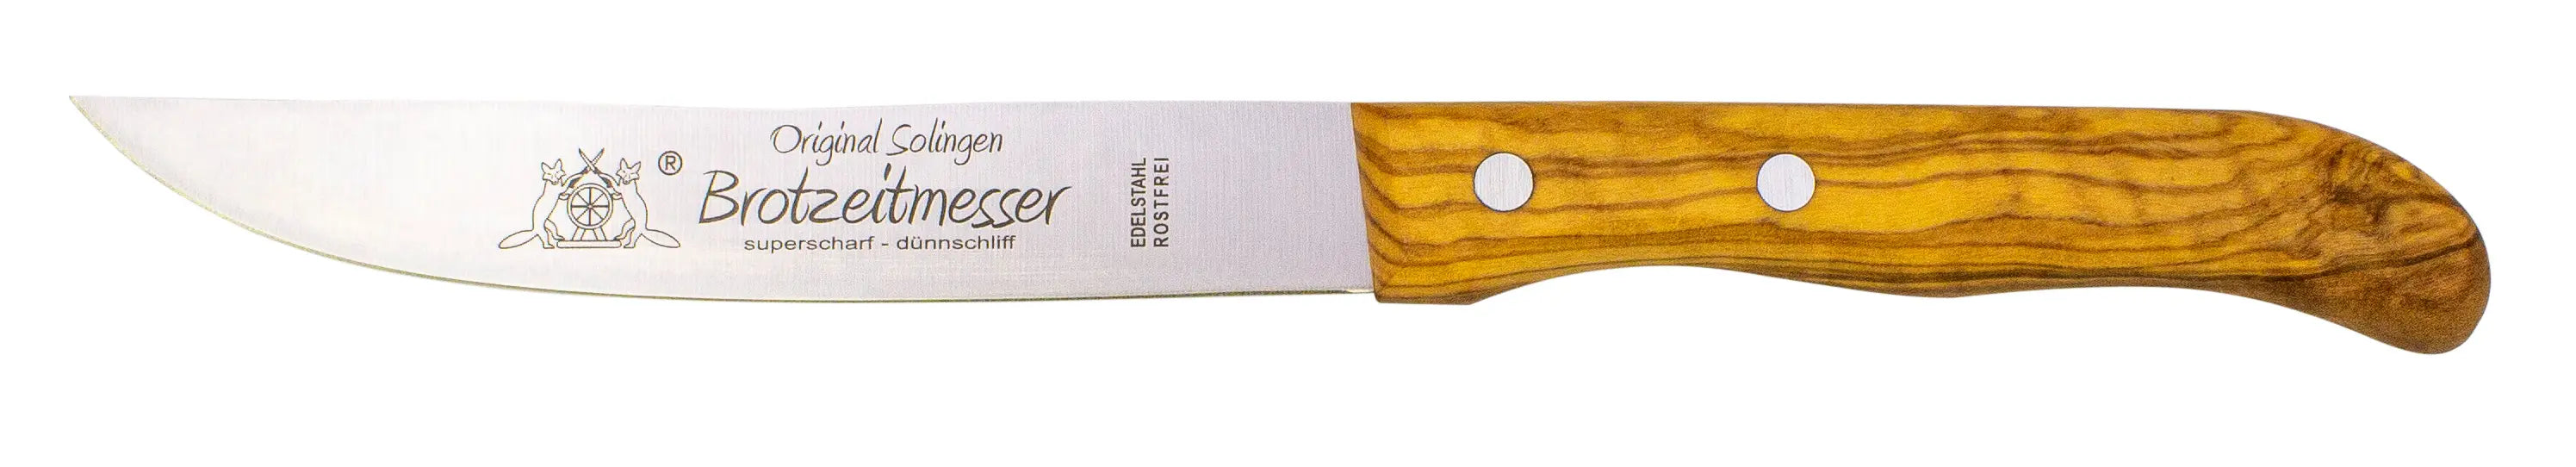 Messerset 14-tlg. mit Olivenholz - Made in Solingen